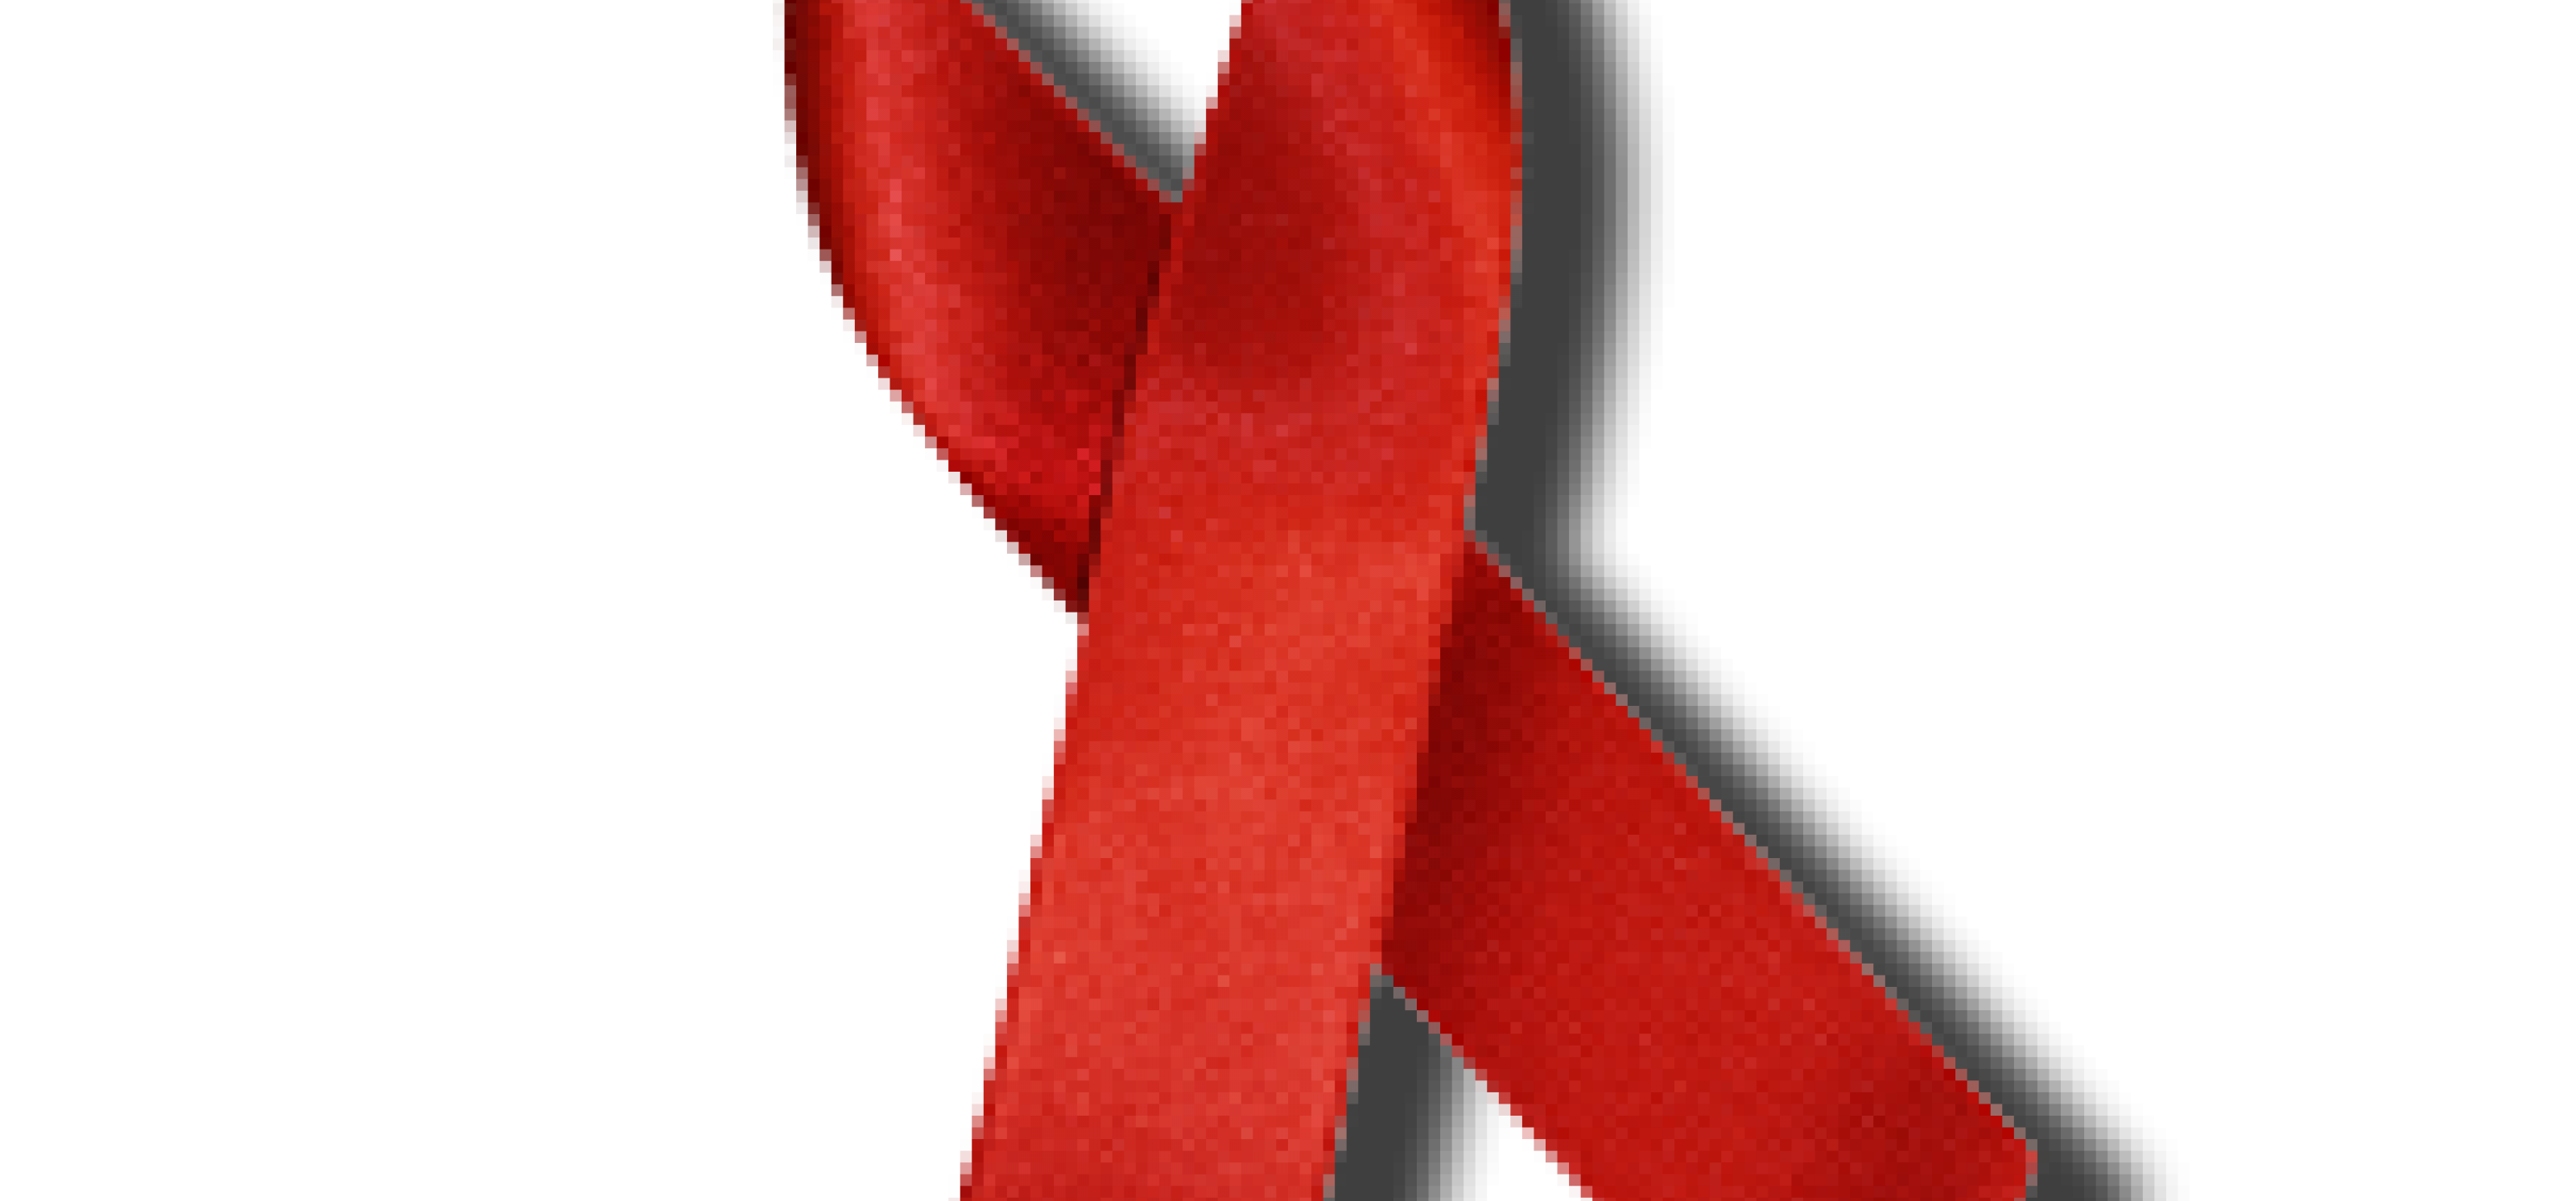 Kostenlose dating-sites für menschen mit hiv